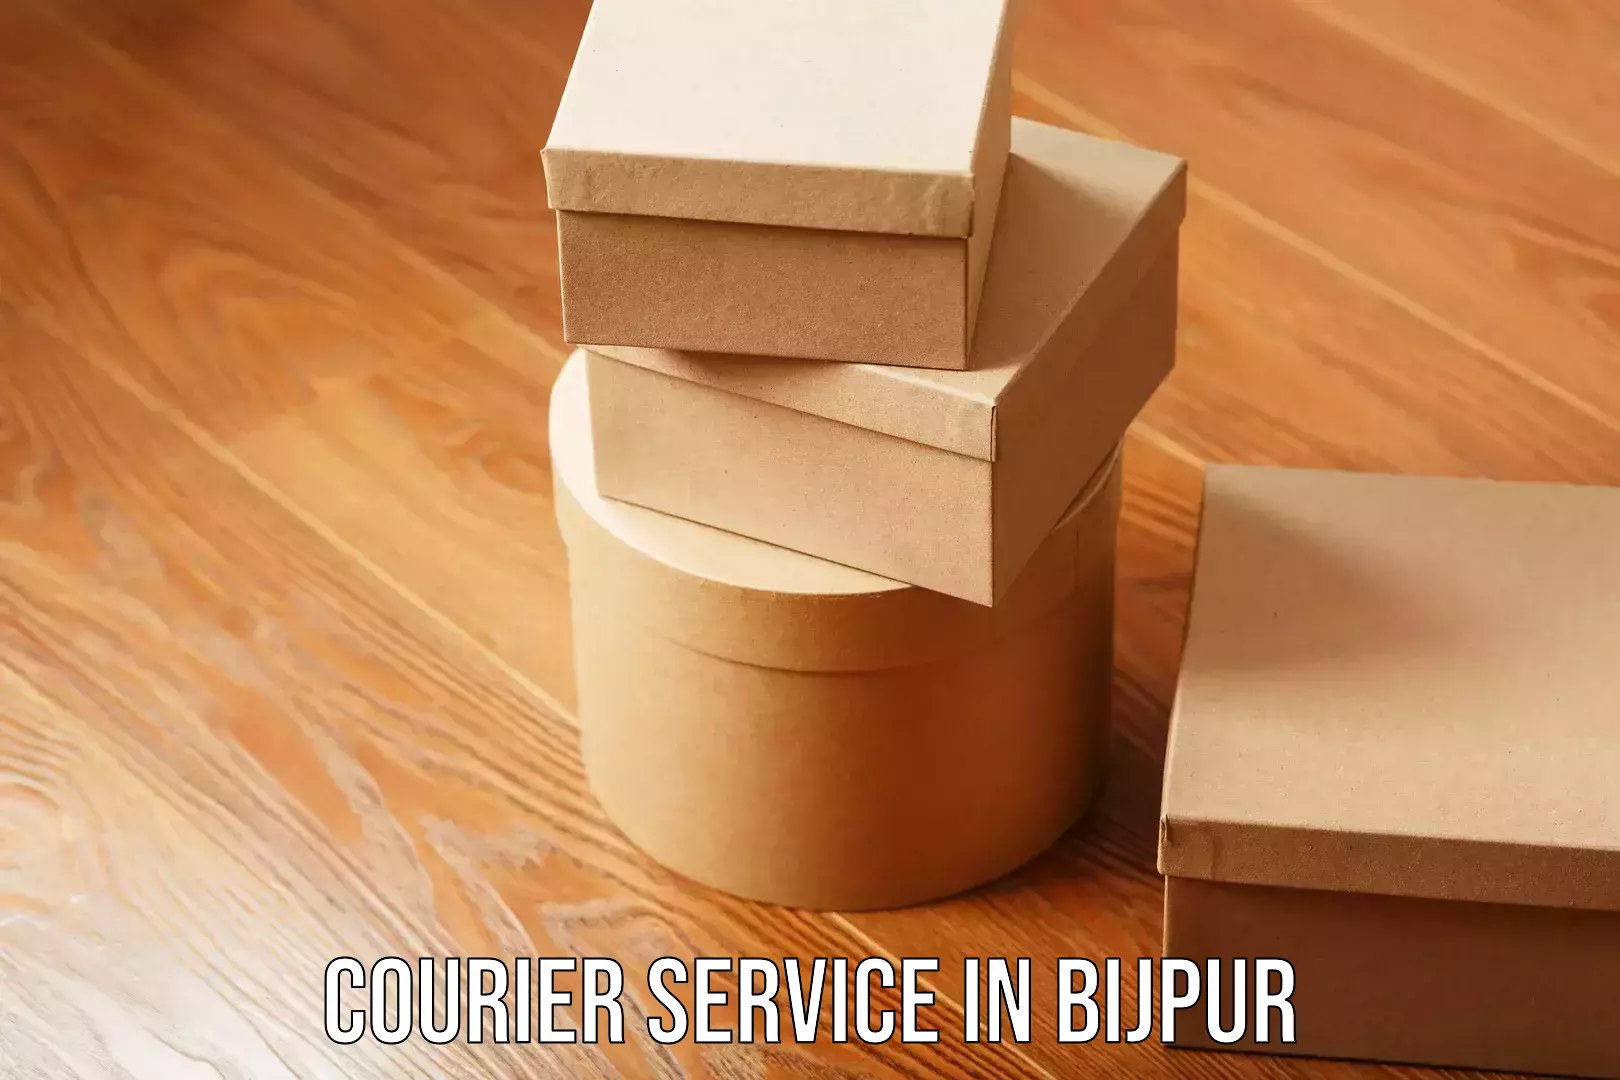 Efficient freight service in Bijpur